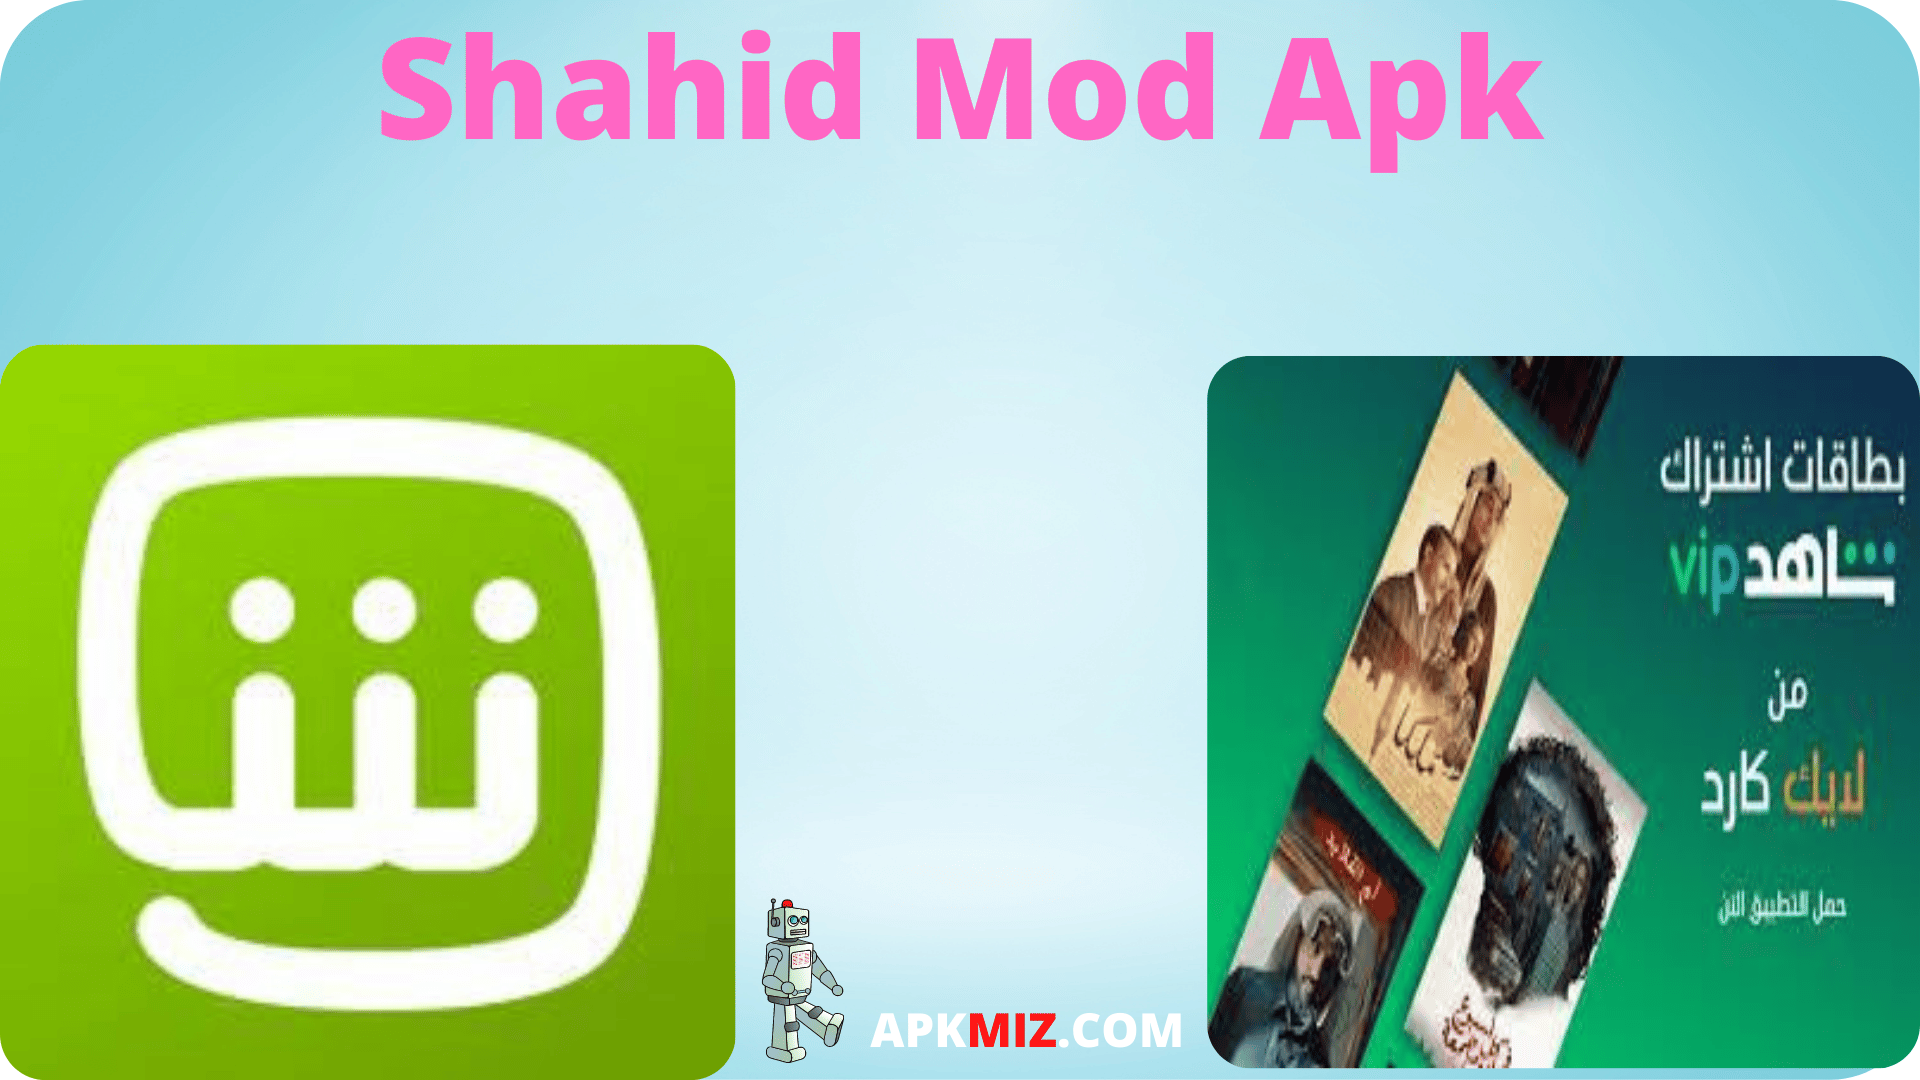 Shahid Mod Apk